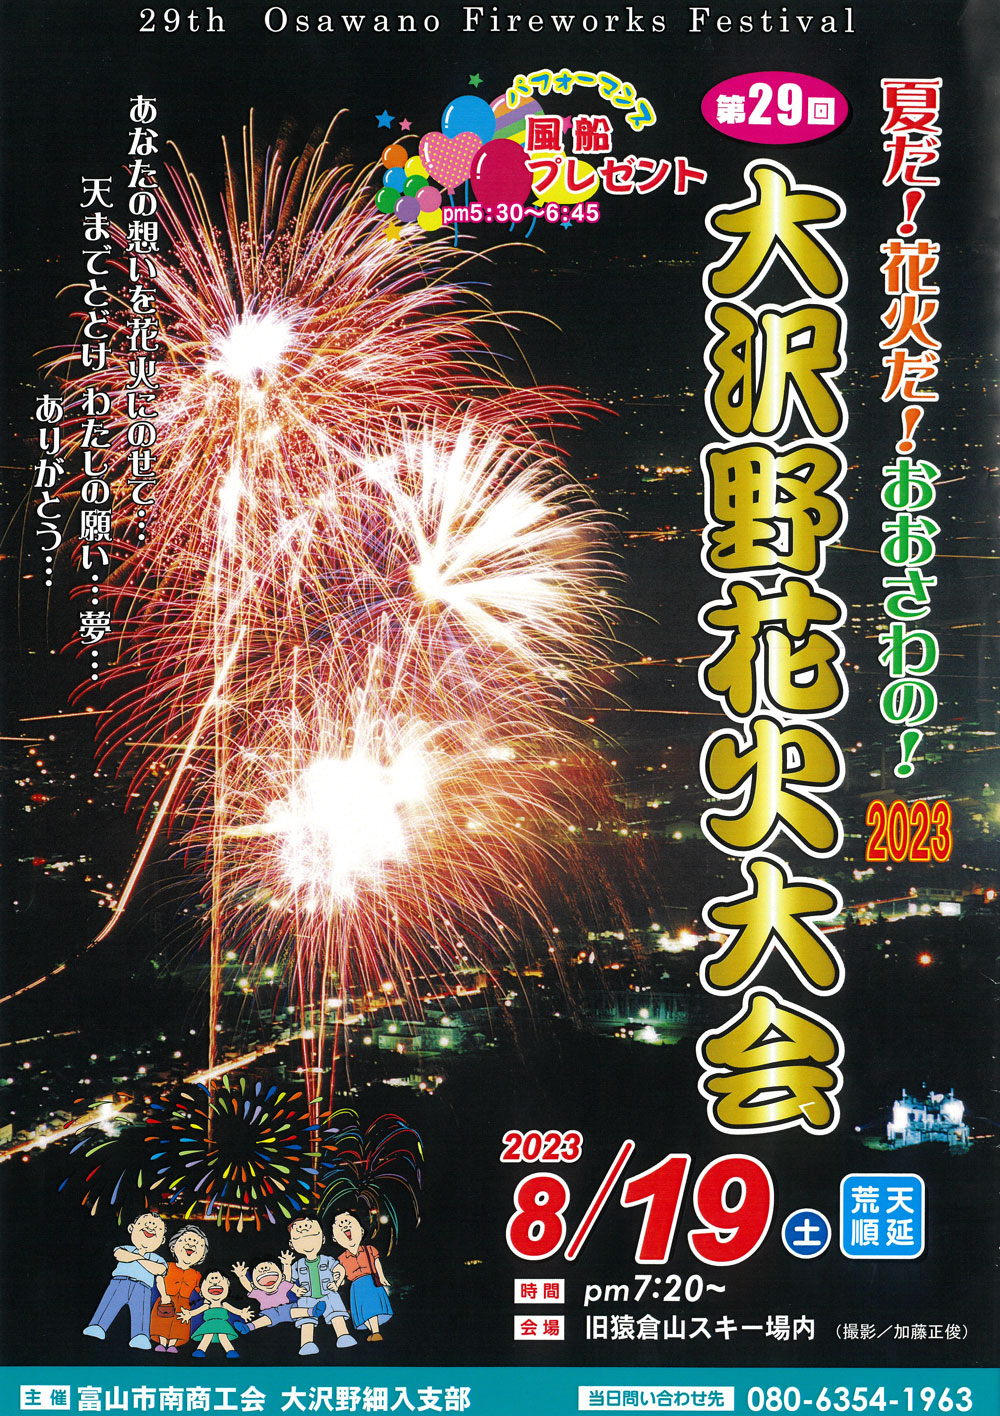 「大沢野花火大会2023」旧猿倉山スキー場での山花火のポスター